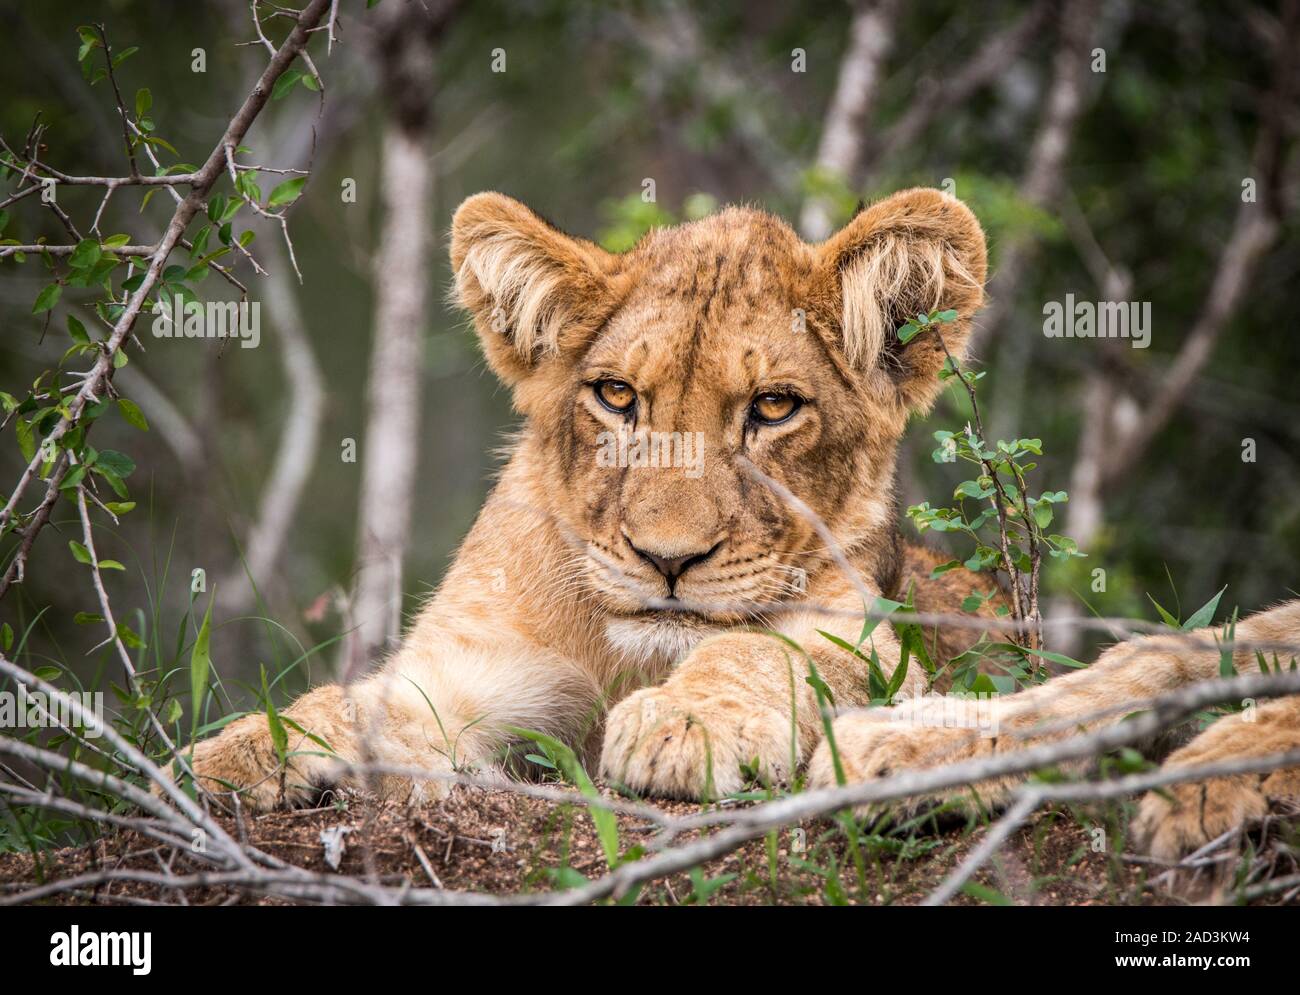 Lion cub starring in die Kamera. Stockfoto